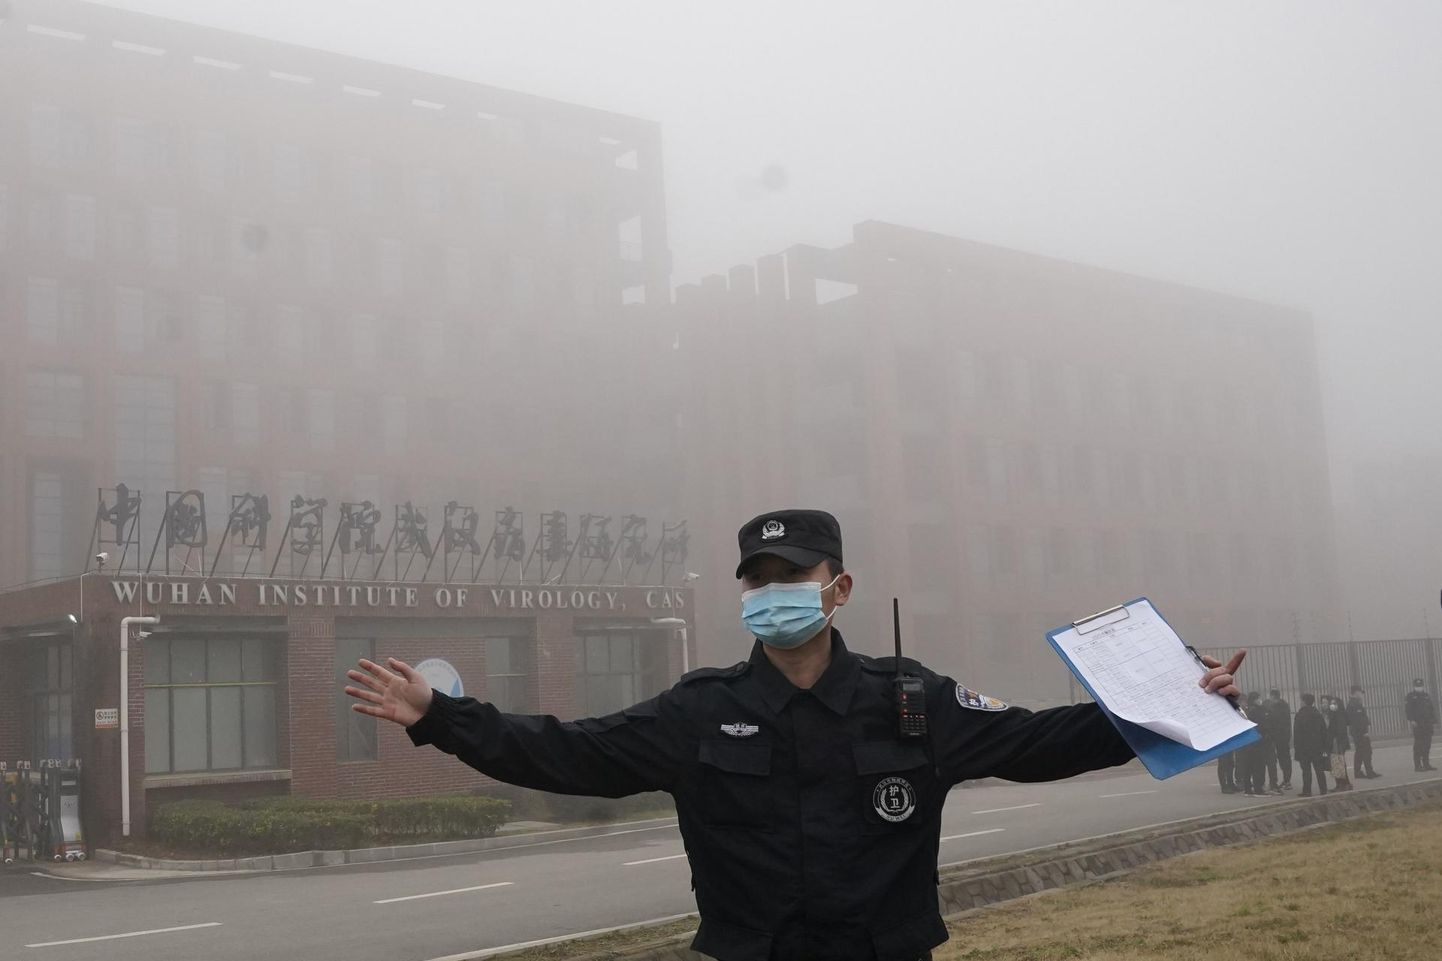 Julgeolekutöötaja tõrjub Wuhani viroloogiainstituudi juures ajakirjanikke eemale tänavu veebruaris, mil uurimisasutust külastas WHO ekspertide meeskond, kes püüdis selgitada välja uue koroonaviiruse päritolu. 